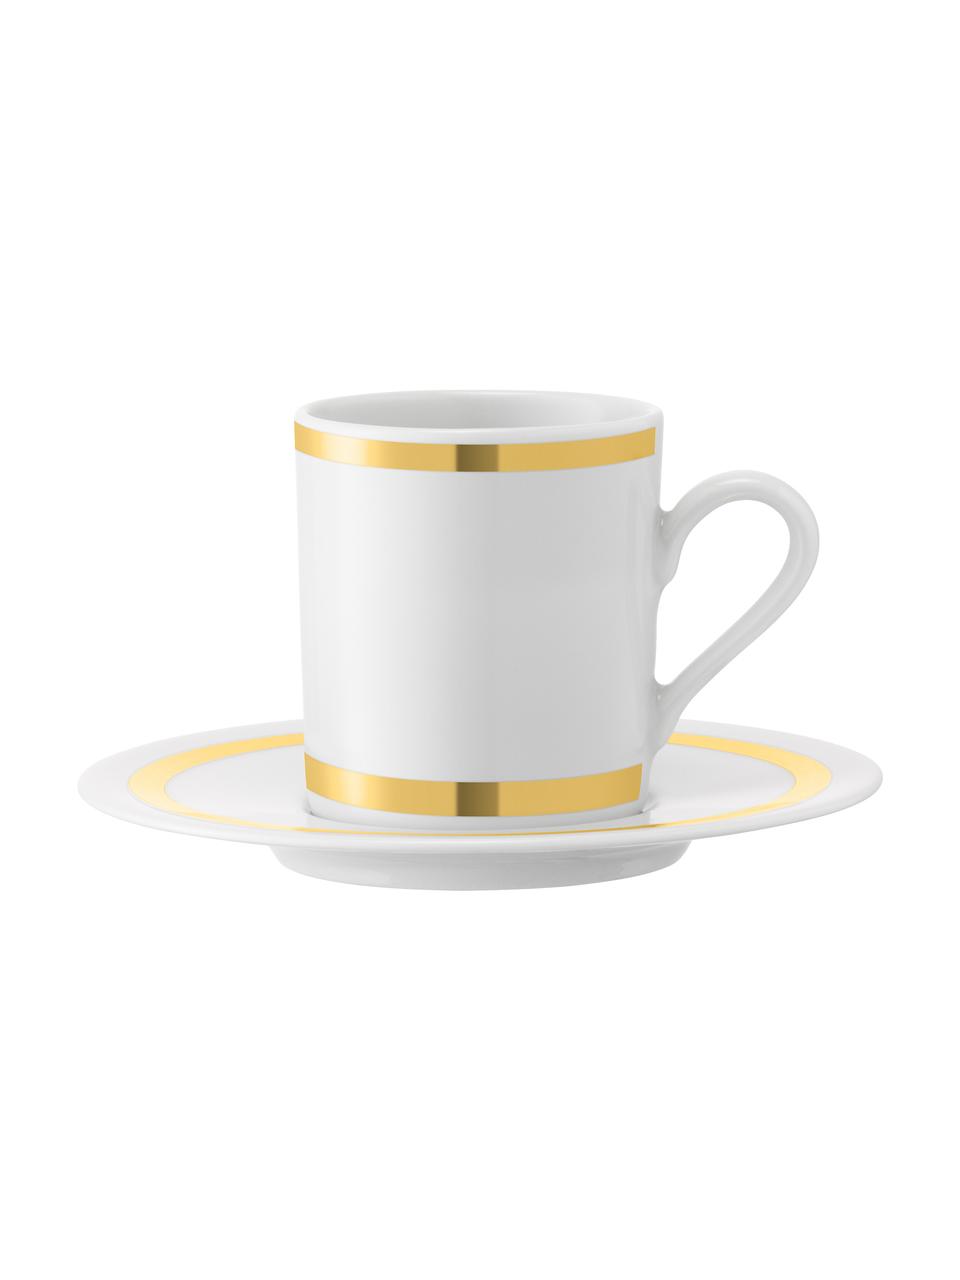 Espressotassen mit Untertassen Deco mit goldenem Dekor, 8 Stück, Porzellan, Weiss, Goldfarben, Ø 7 x H 7 cm